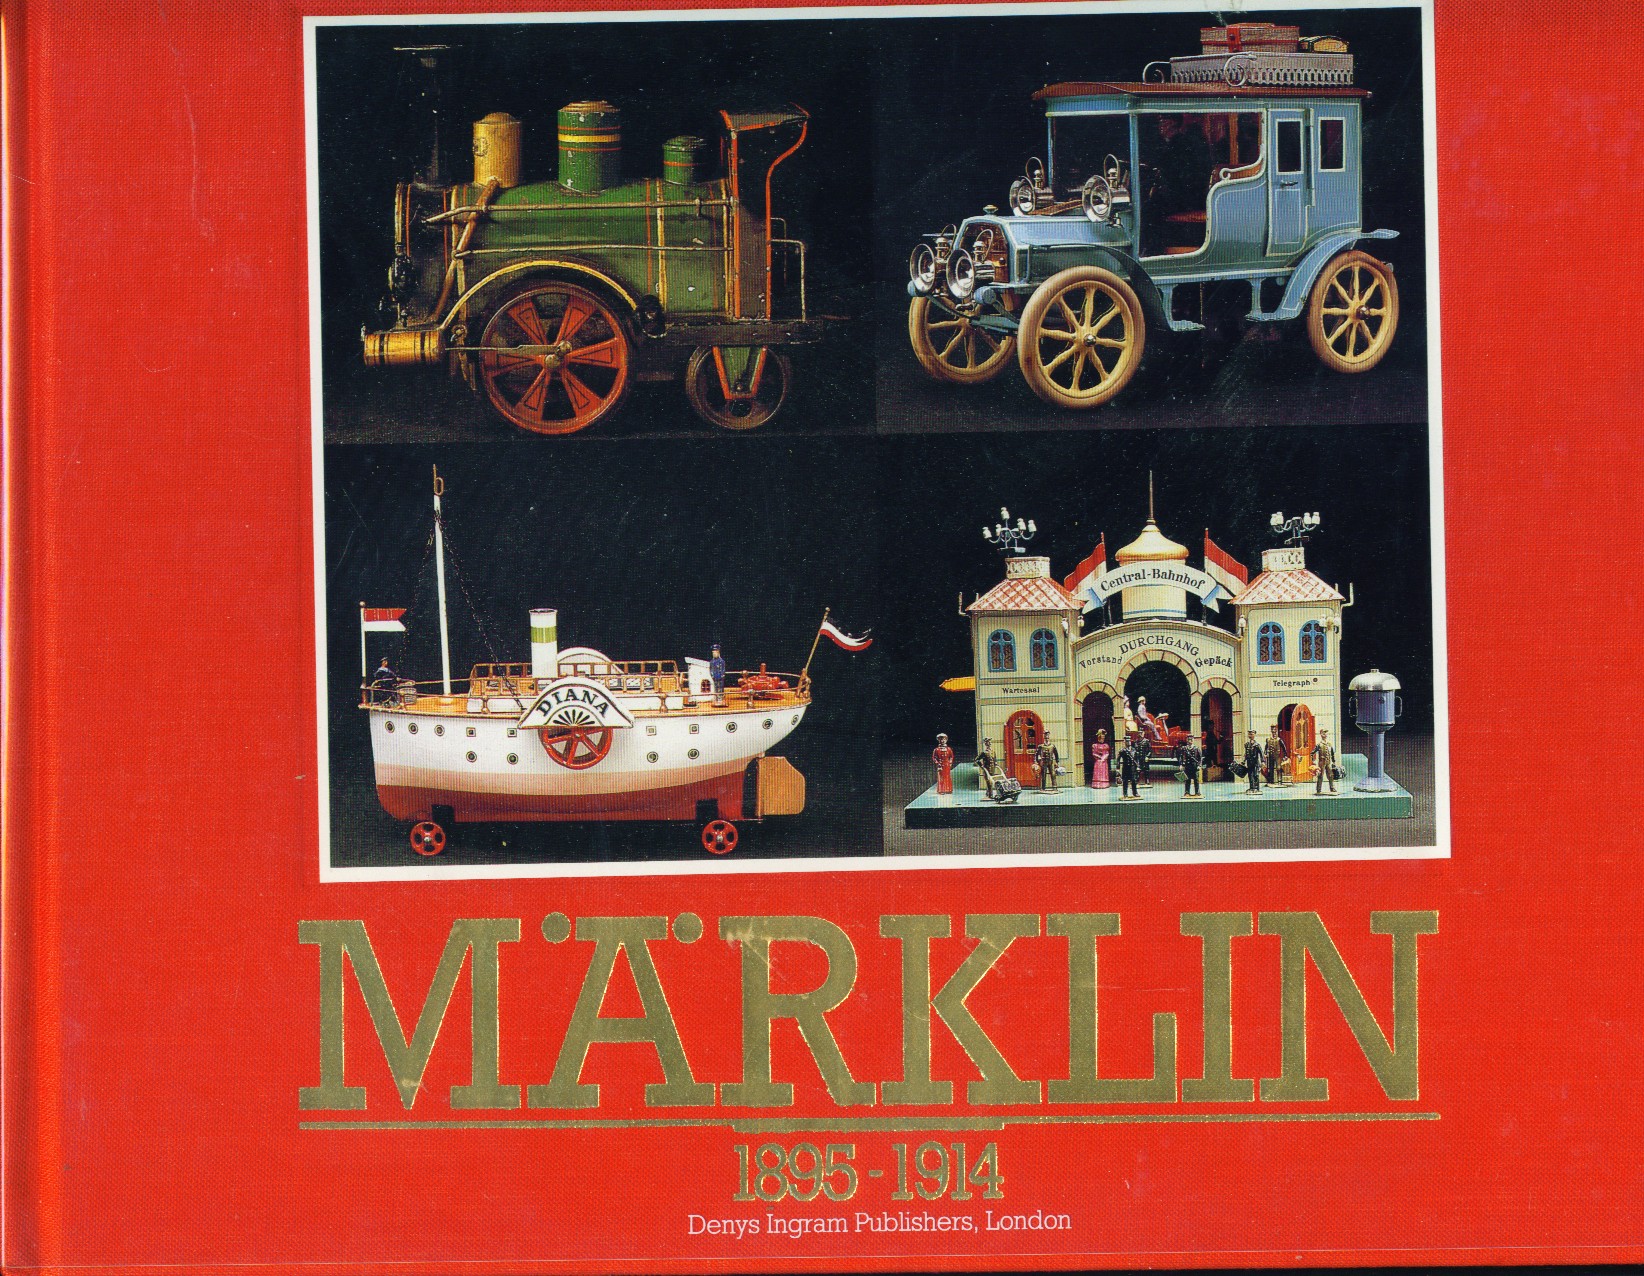 Marklin toys